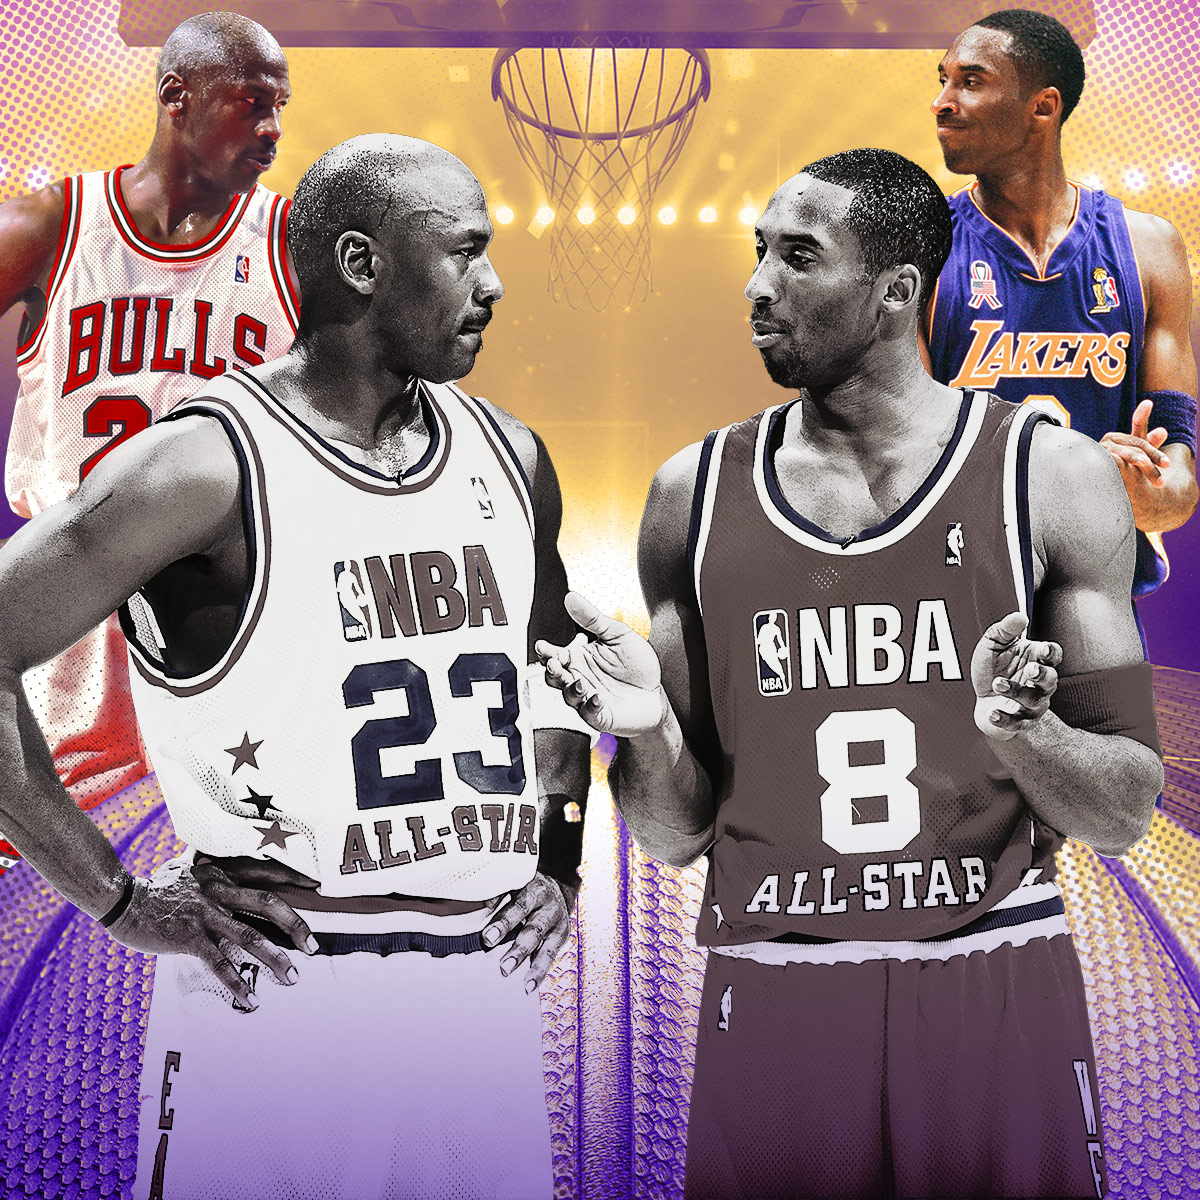 Kobe Bryant - Biography, Hall of Fame NBA Basketball Player